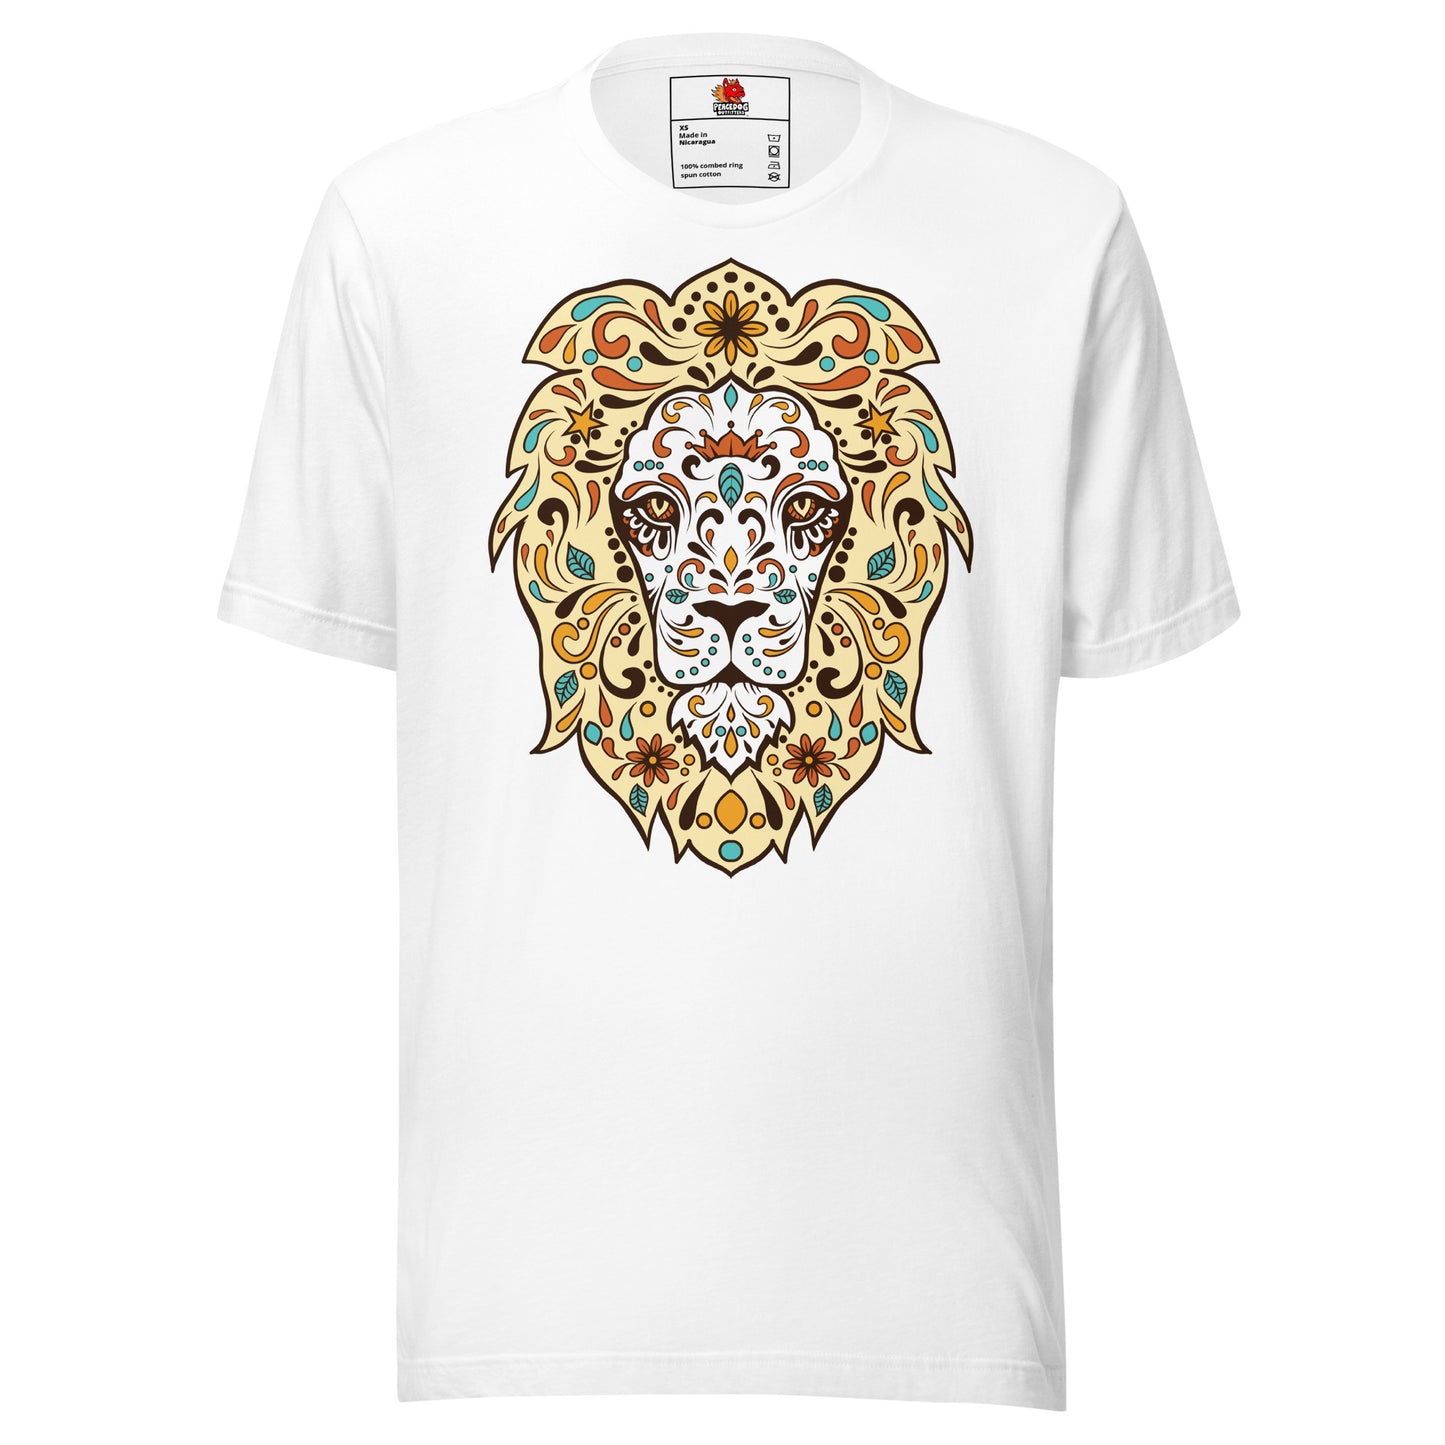 Exquisite Lion T-Shirt